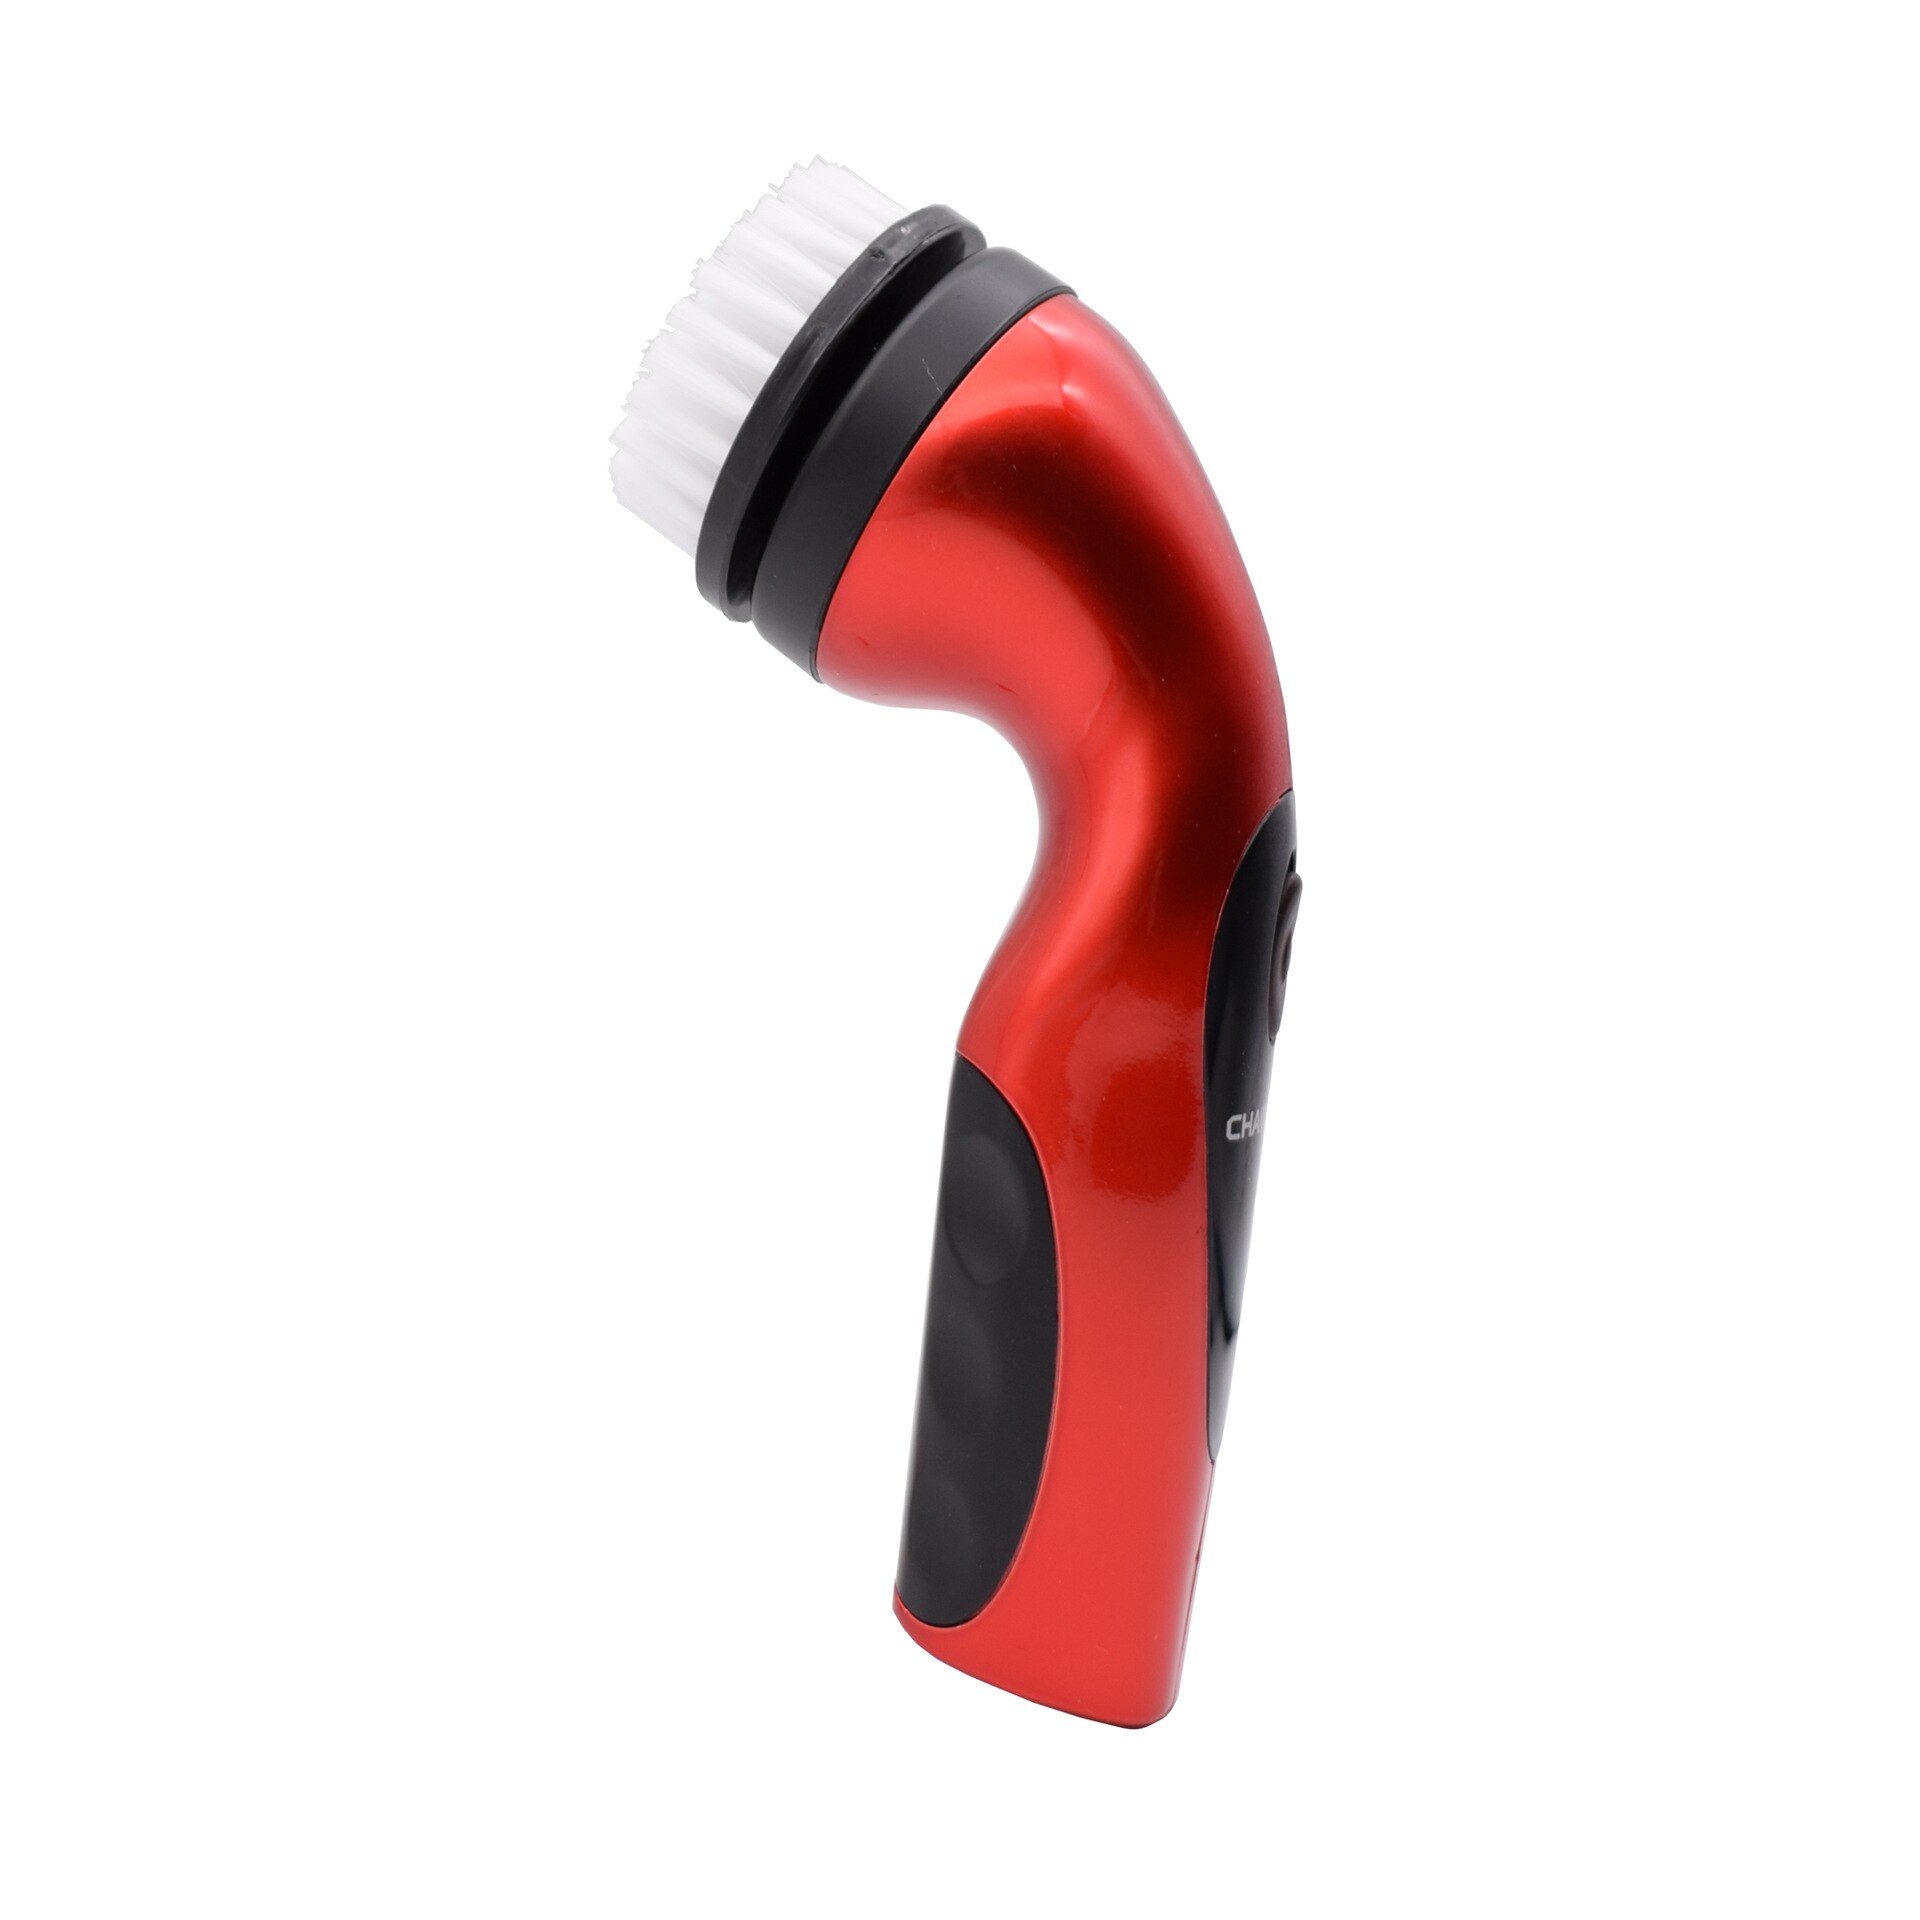 Håndholdt bærbar afgiftspligtig poleringsmaskine mini praktisk skoskinne mekanisk skorenseanordning nyttigt skoværktøj: Rød farve